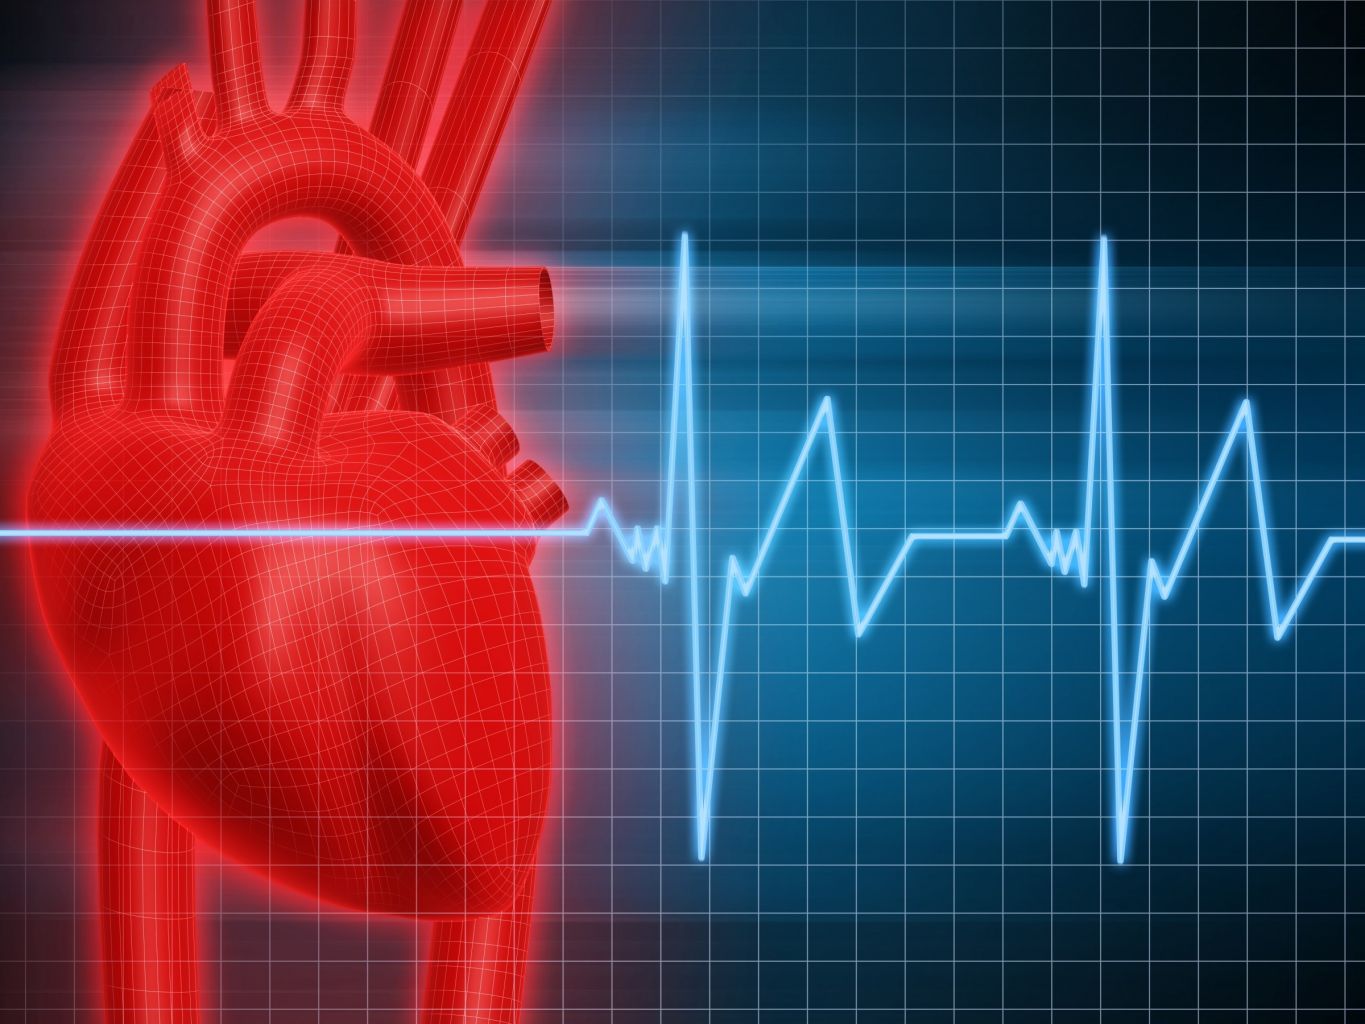 Tìm hiểu về các biện pháp phòng ngừa tim đập nhanh và bệnh tim mạch.

Note: Bài big content nên bao gồm thông tin về các bệnh tim mạch, nguyên nhân gây ra tim đập nhanh, triệu chứng và cách điều trị tim đập nhanh, những biện pháp phòng ngừa và cải thiện sức khỏe tim mạch.